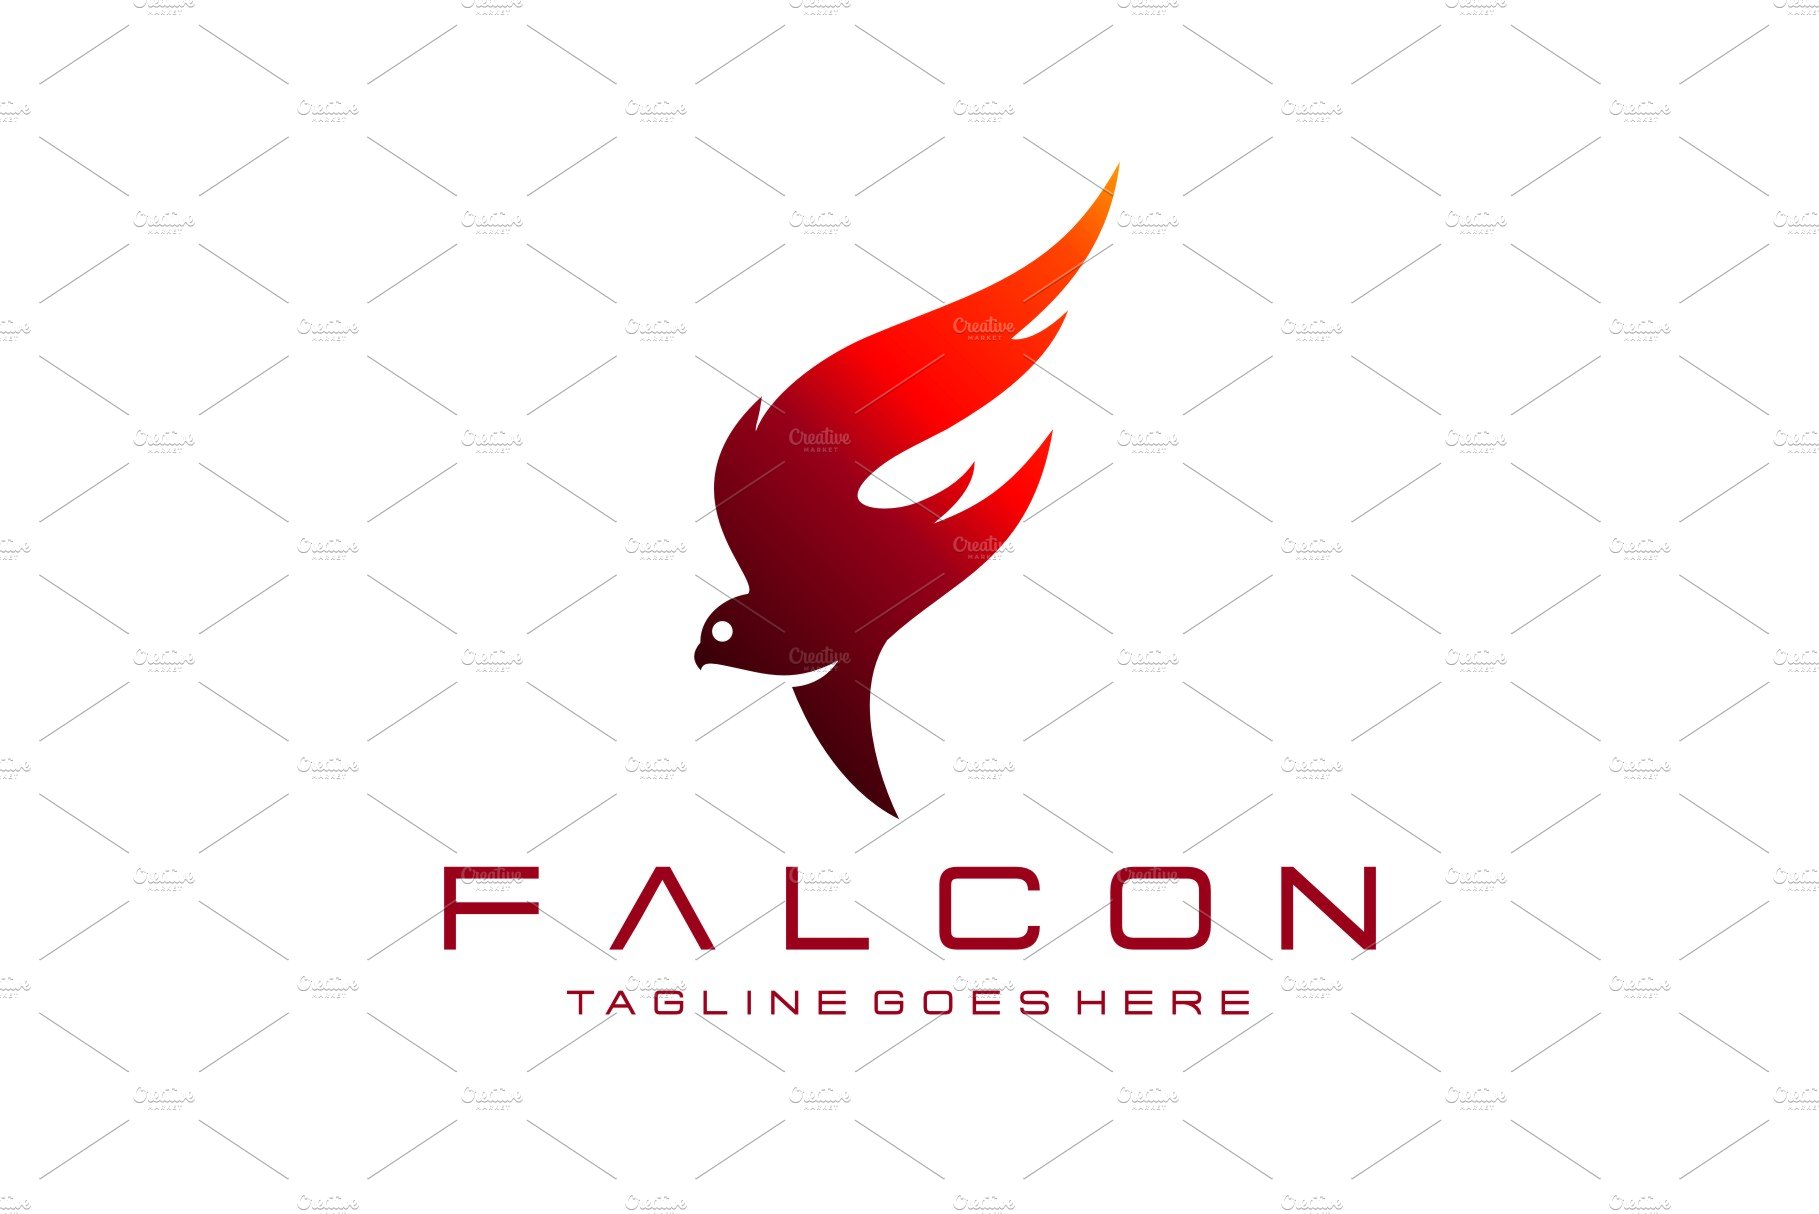 Letter F - Falcon cover image.